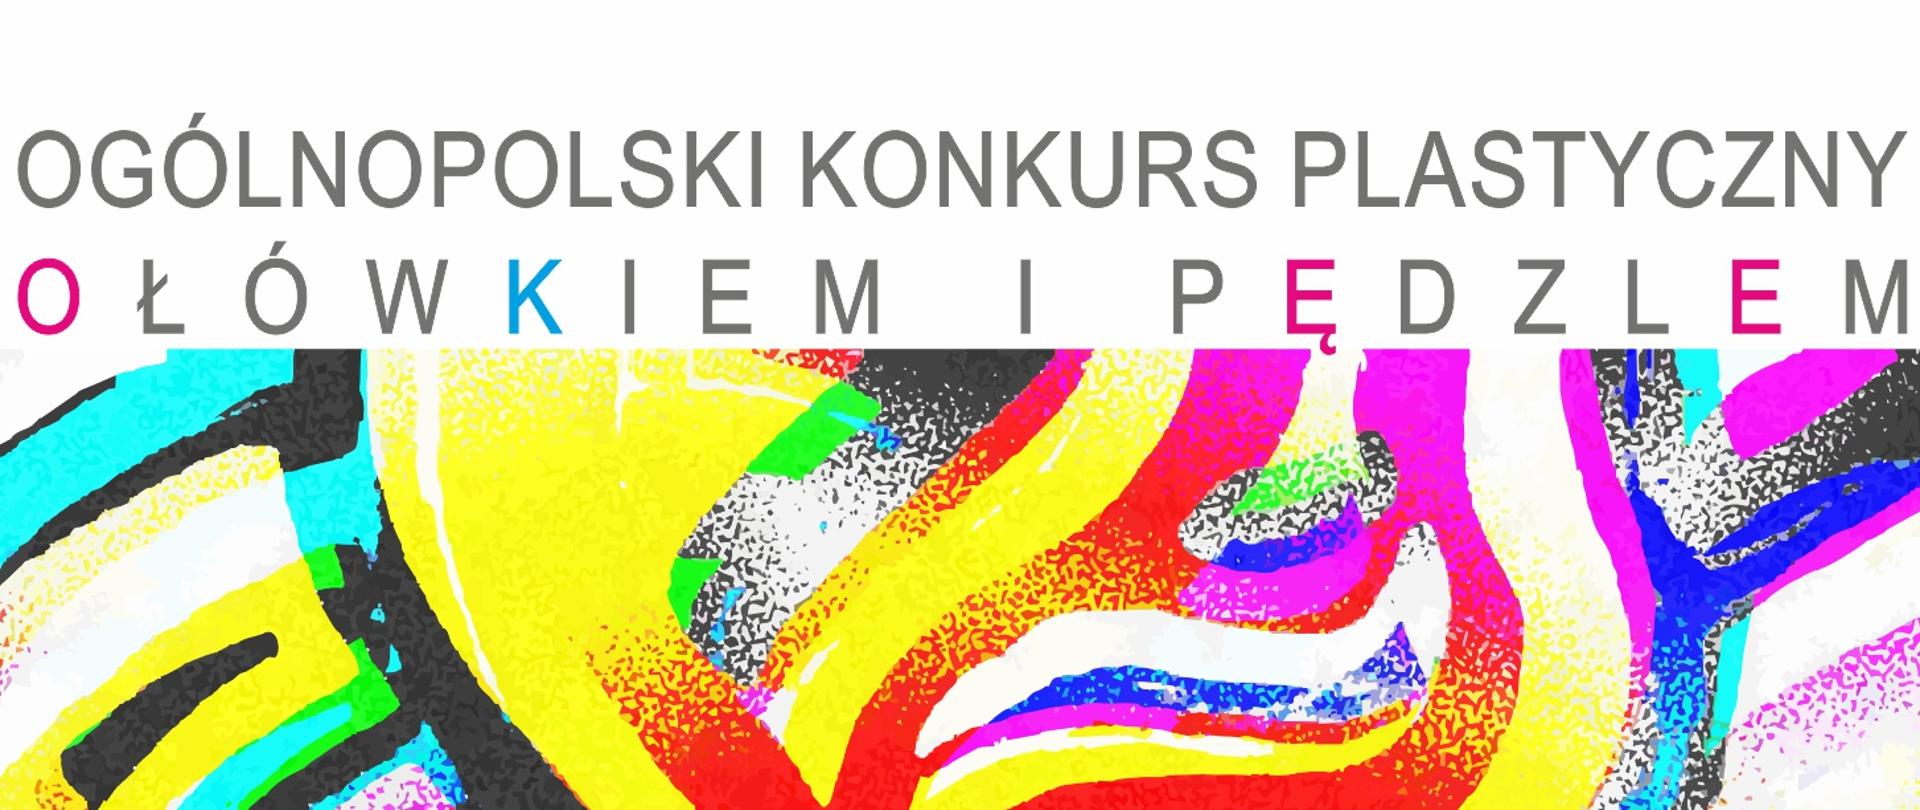 grafika Ogólnopolski Konkurs Plastyczny "Ołówkiem i pędzlem" 